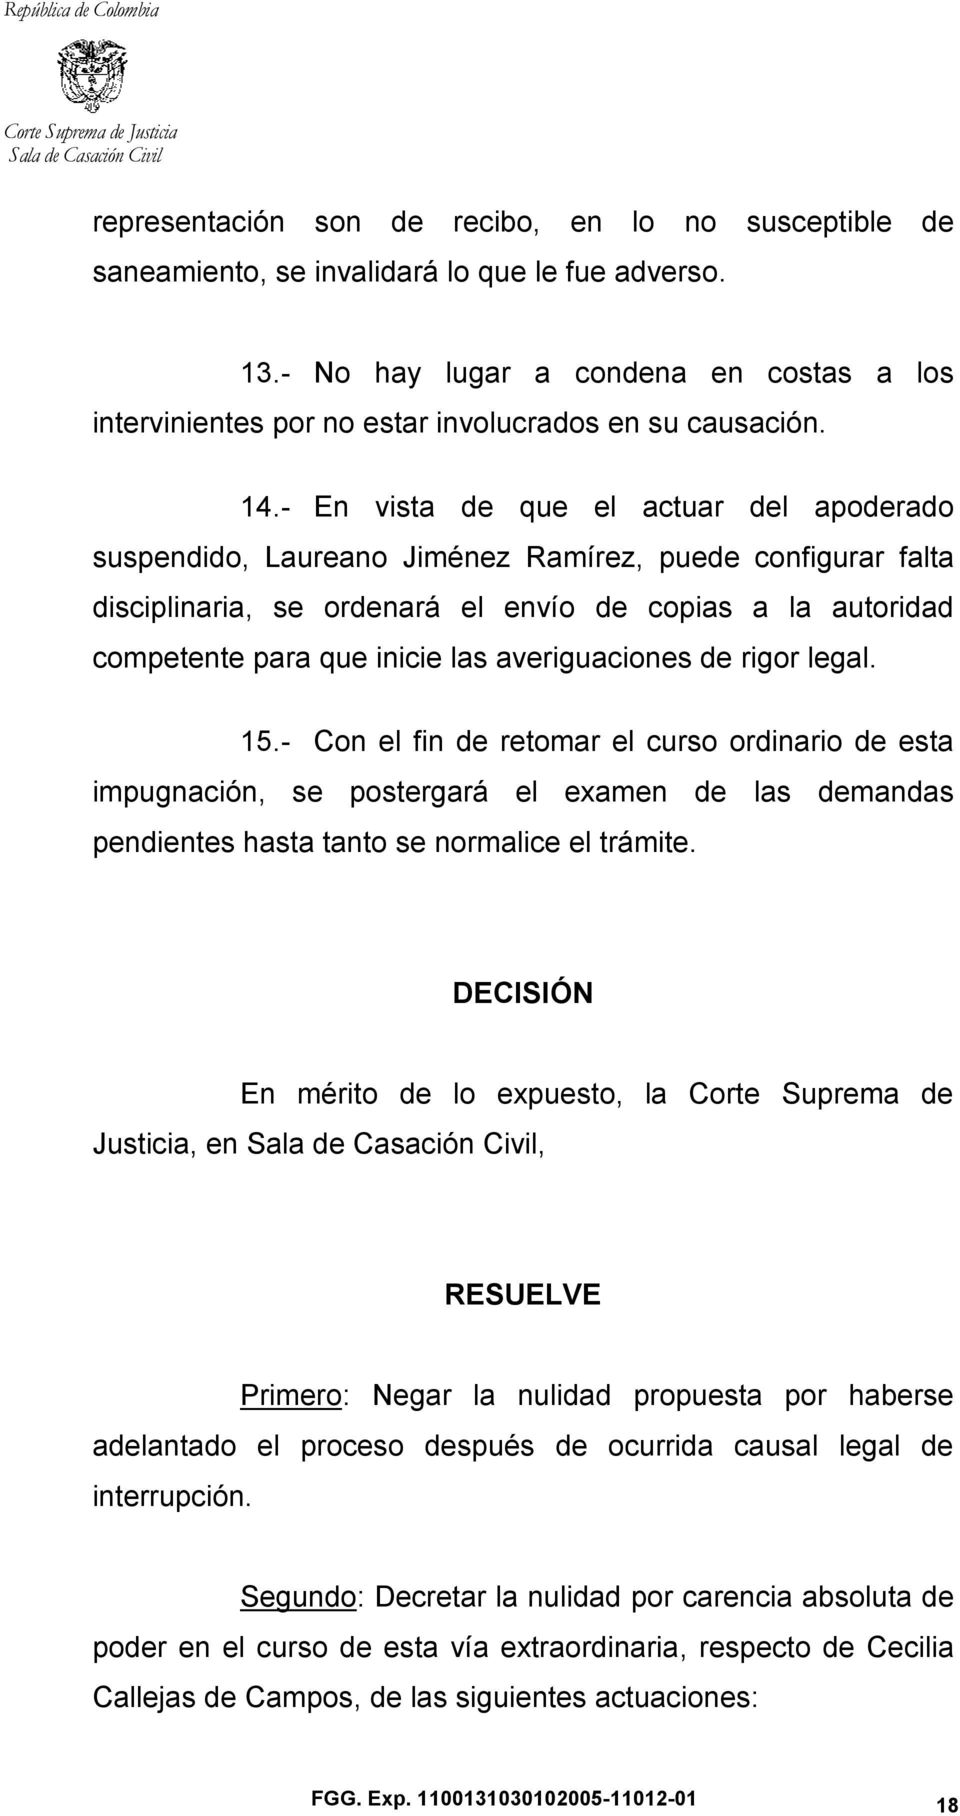 - En vista de que el actuar del apoderado suspendido, Laureano Jiménez Ramírez, puede configurar falta disciplinaria, se ordenará el envío de copias a la autoridad competente para que inicie las